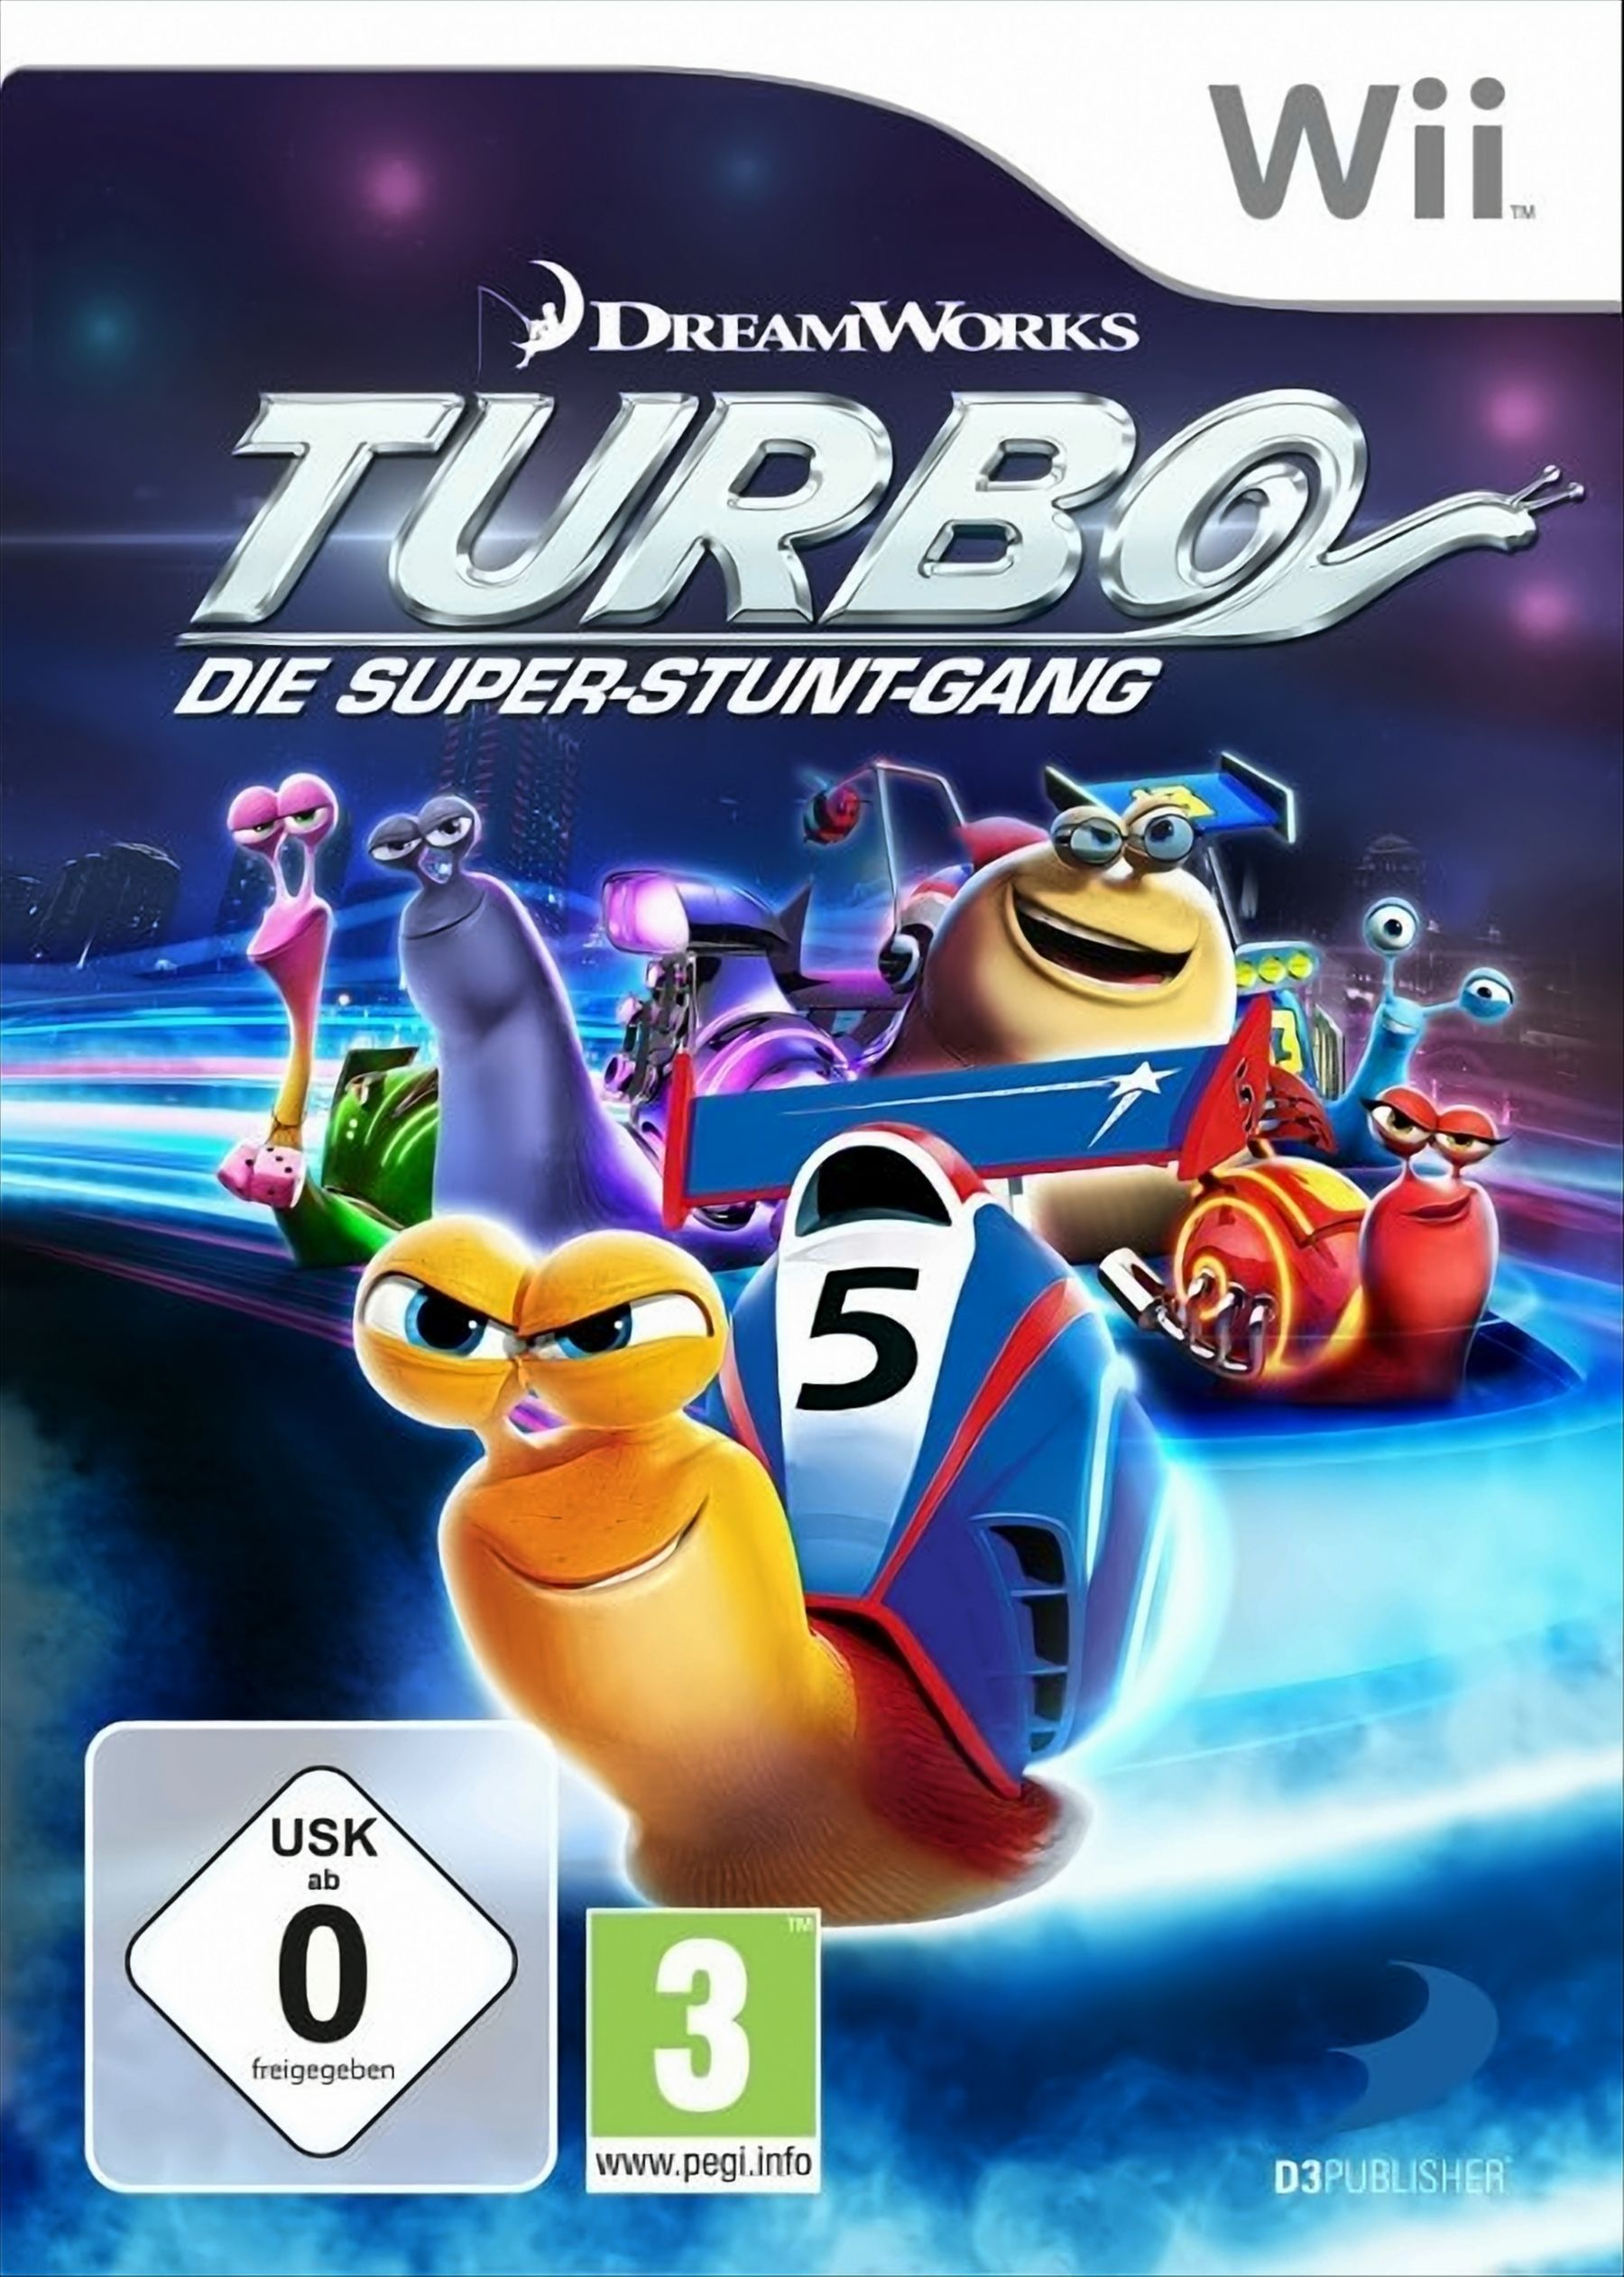 [Nintendo Super-Stunt-Gang Die Wii] - Turbo -